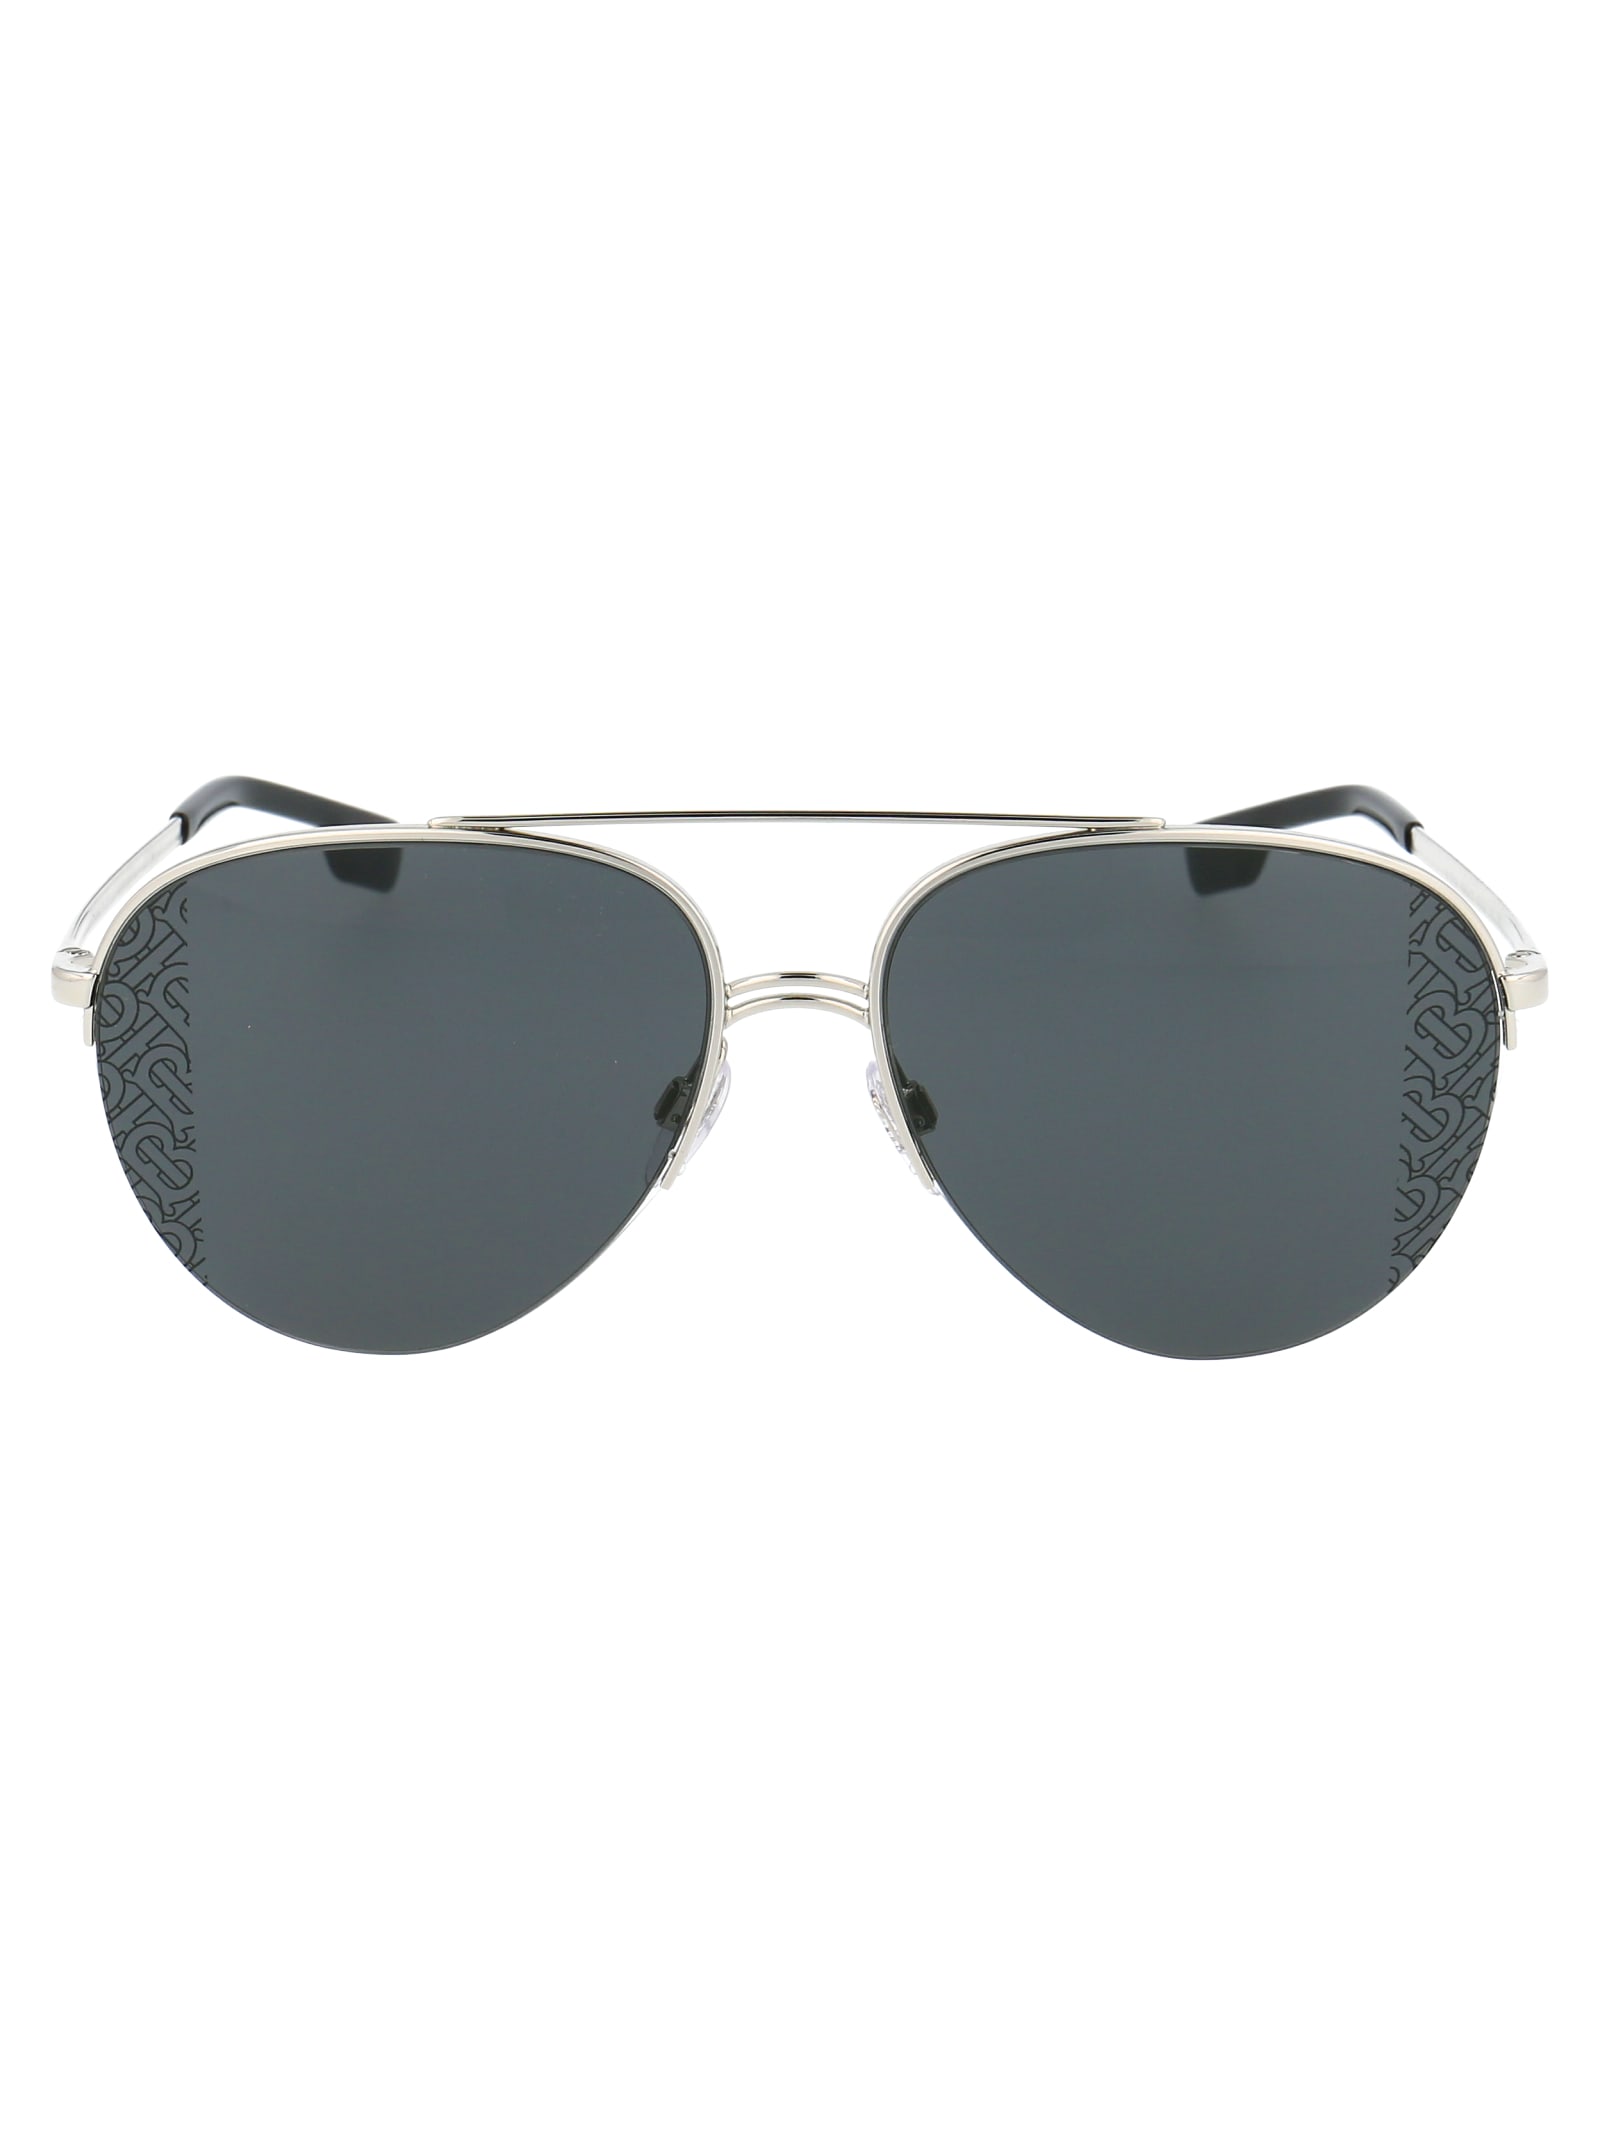 Burberry Sunglasses In Silver